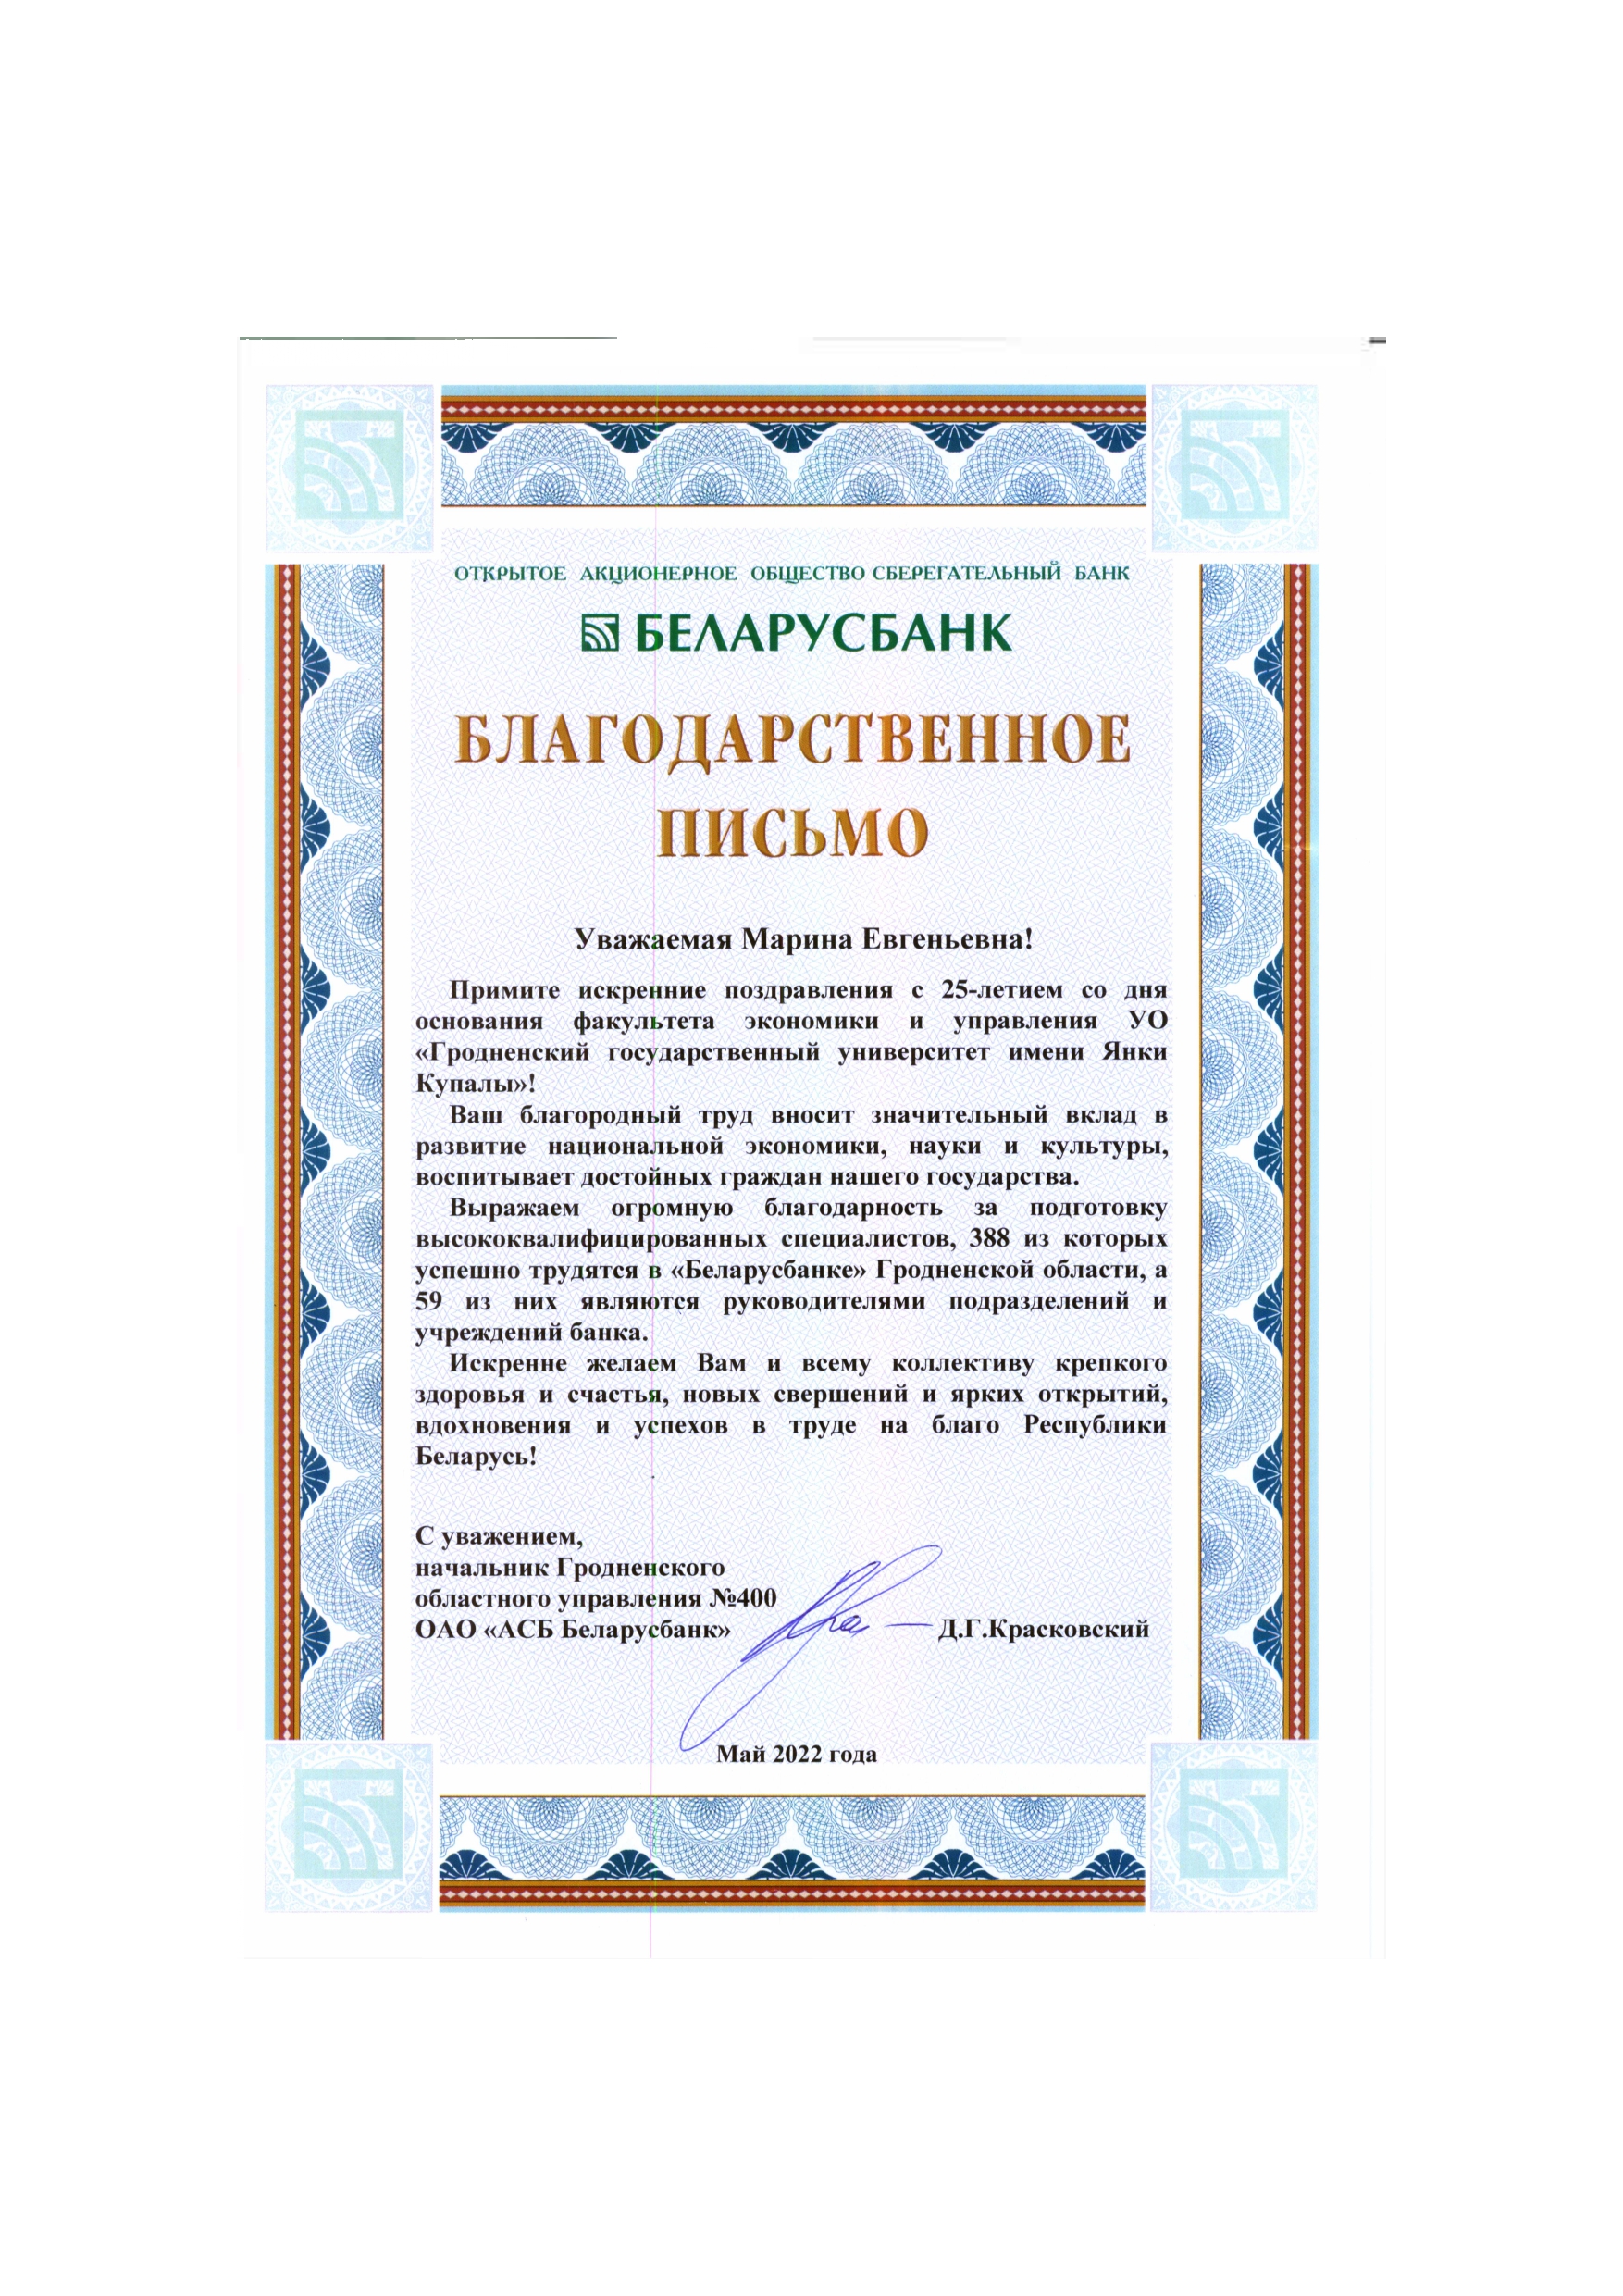 письмо-поздравление Беларусбанк Красковский_page-0001 (1)